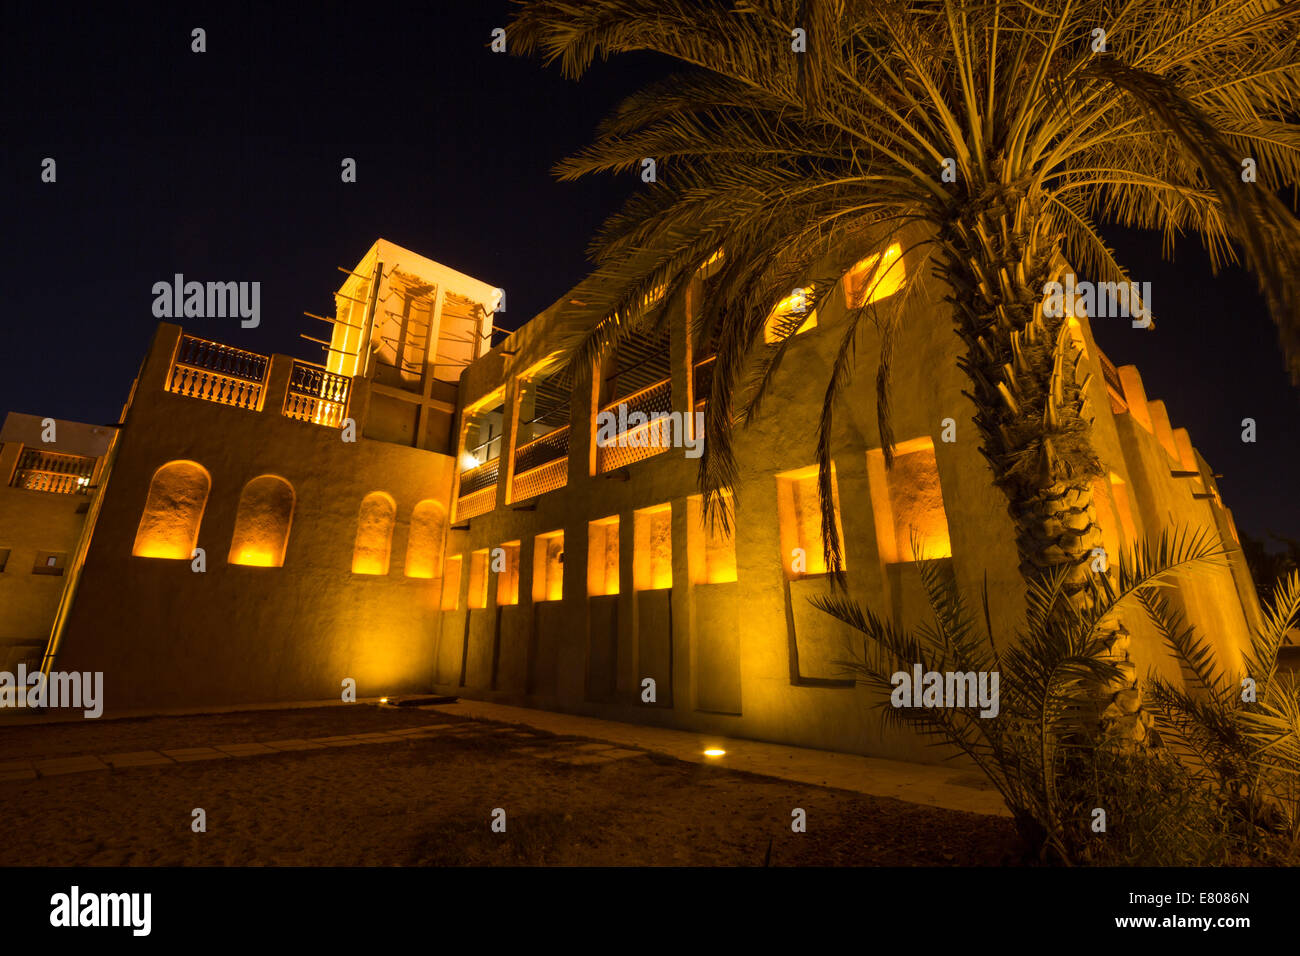 Typische arabische Haus im Stadtteil Deira Dubai. Stockfoto